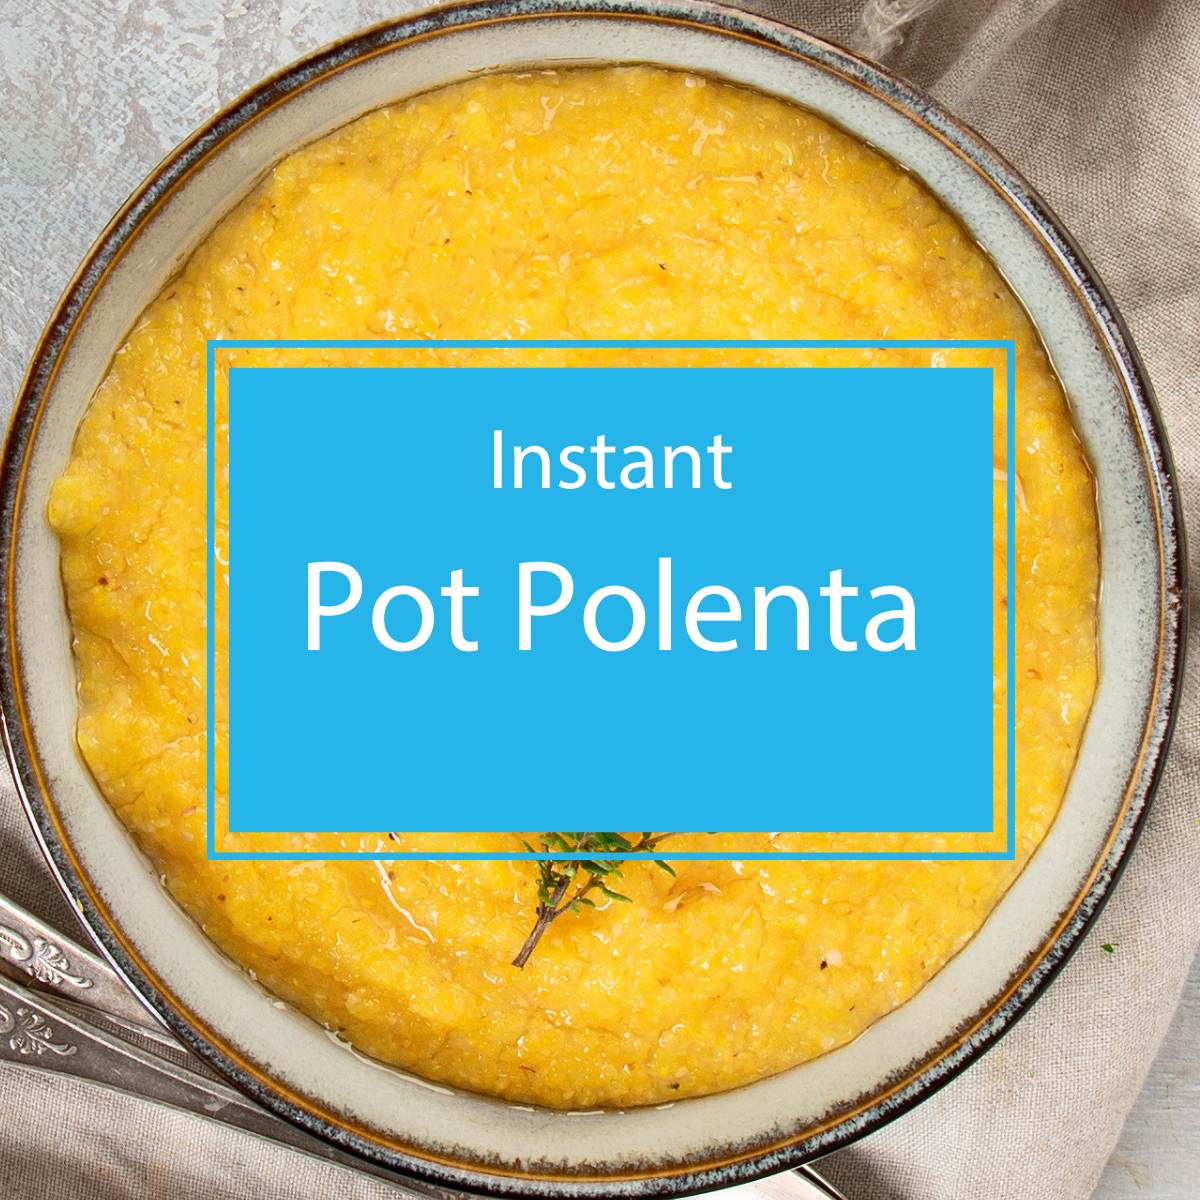 Instant Pot Polenta